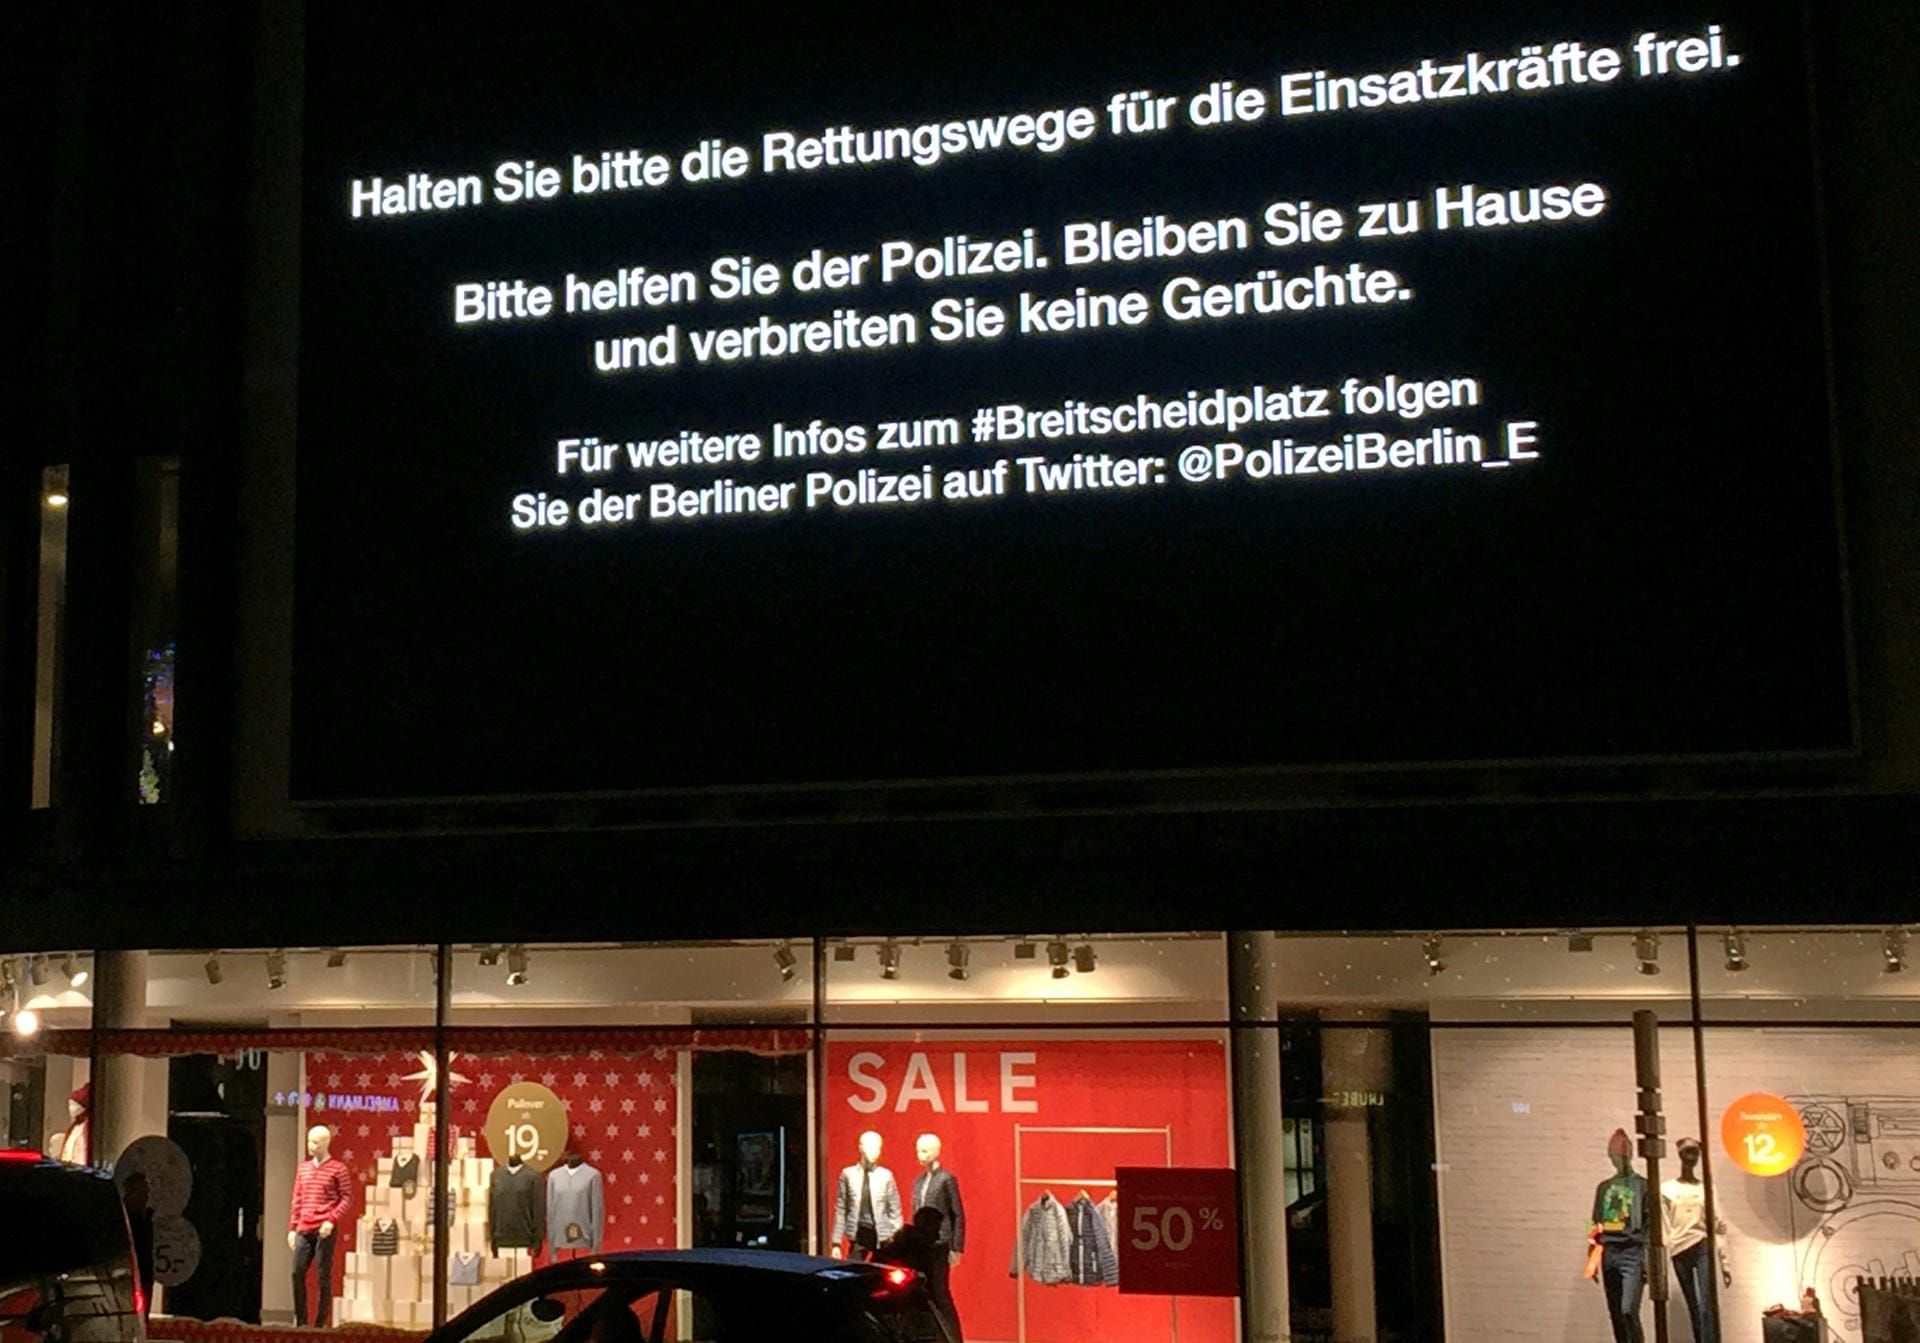 "Halten Sie bitte die Rettungswege für die Einsatzkräfte frei. Bitte helfen Sie der Polizei. Bleiben Sie zu Hause und verbreiten Sie keine Gerüchte" steht an einer Anzeigetafel in der Nähe der Gedächtniskirche in Berlin.